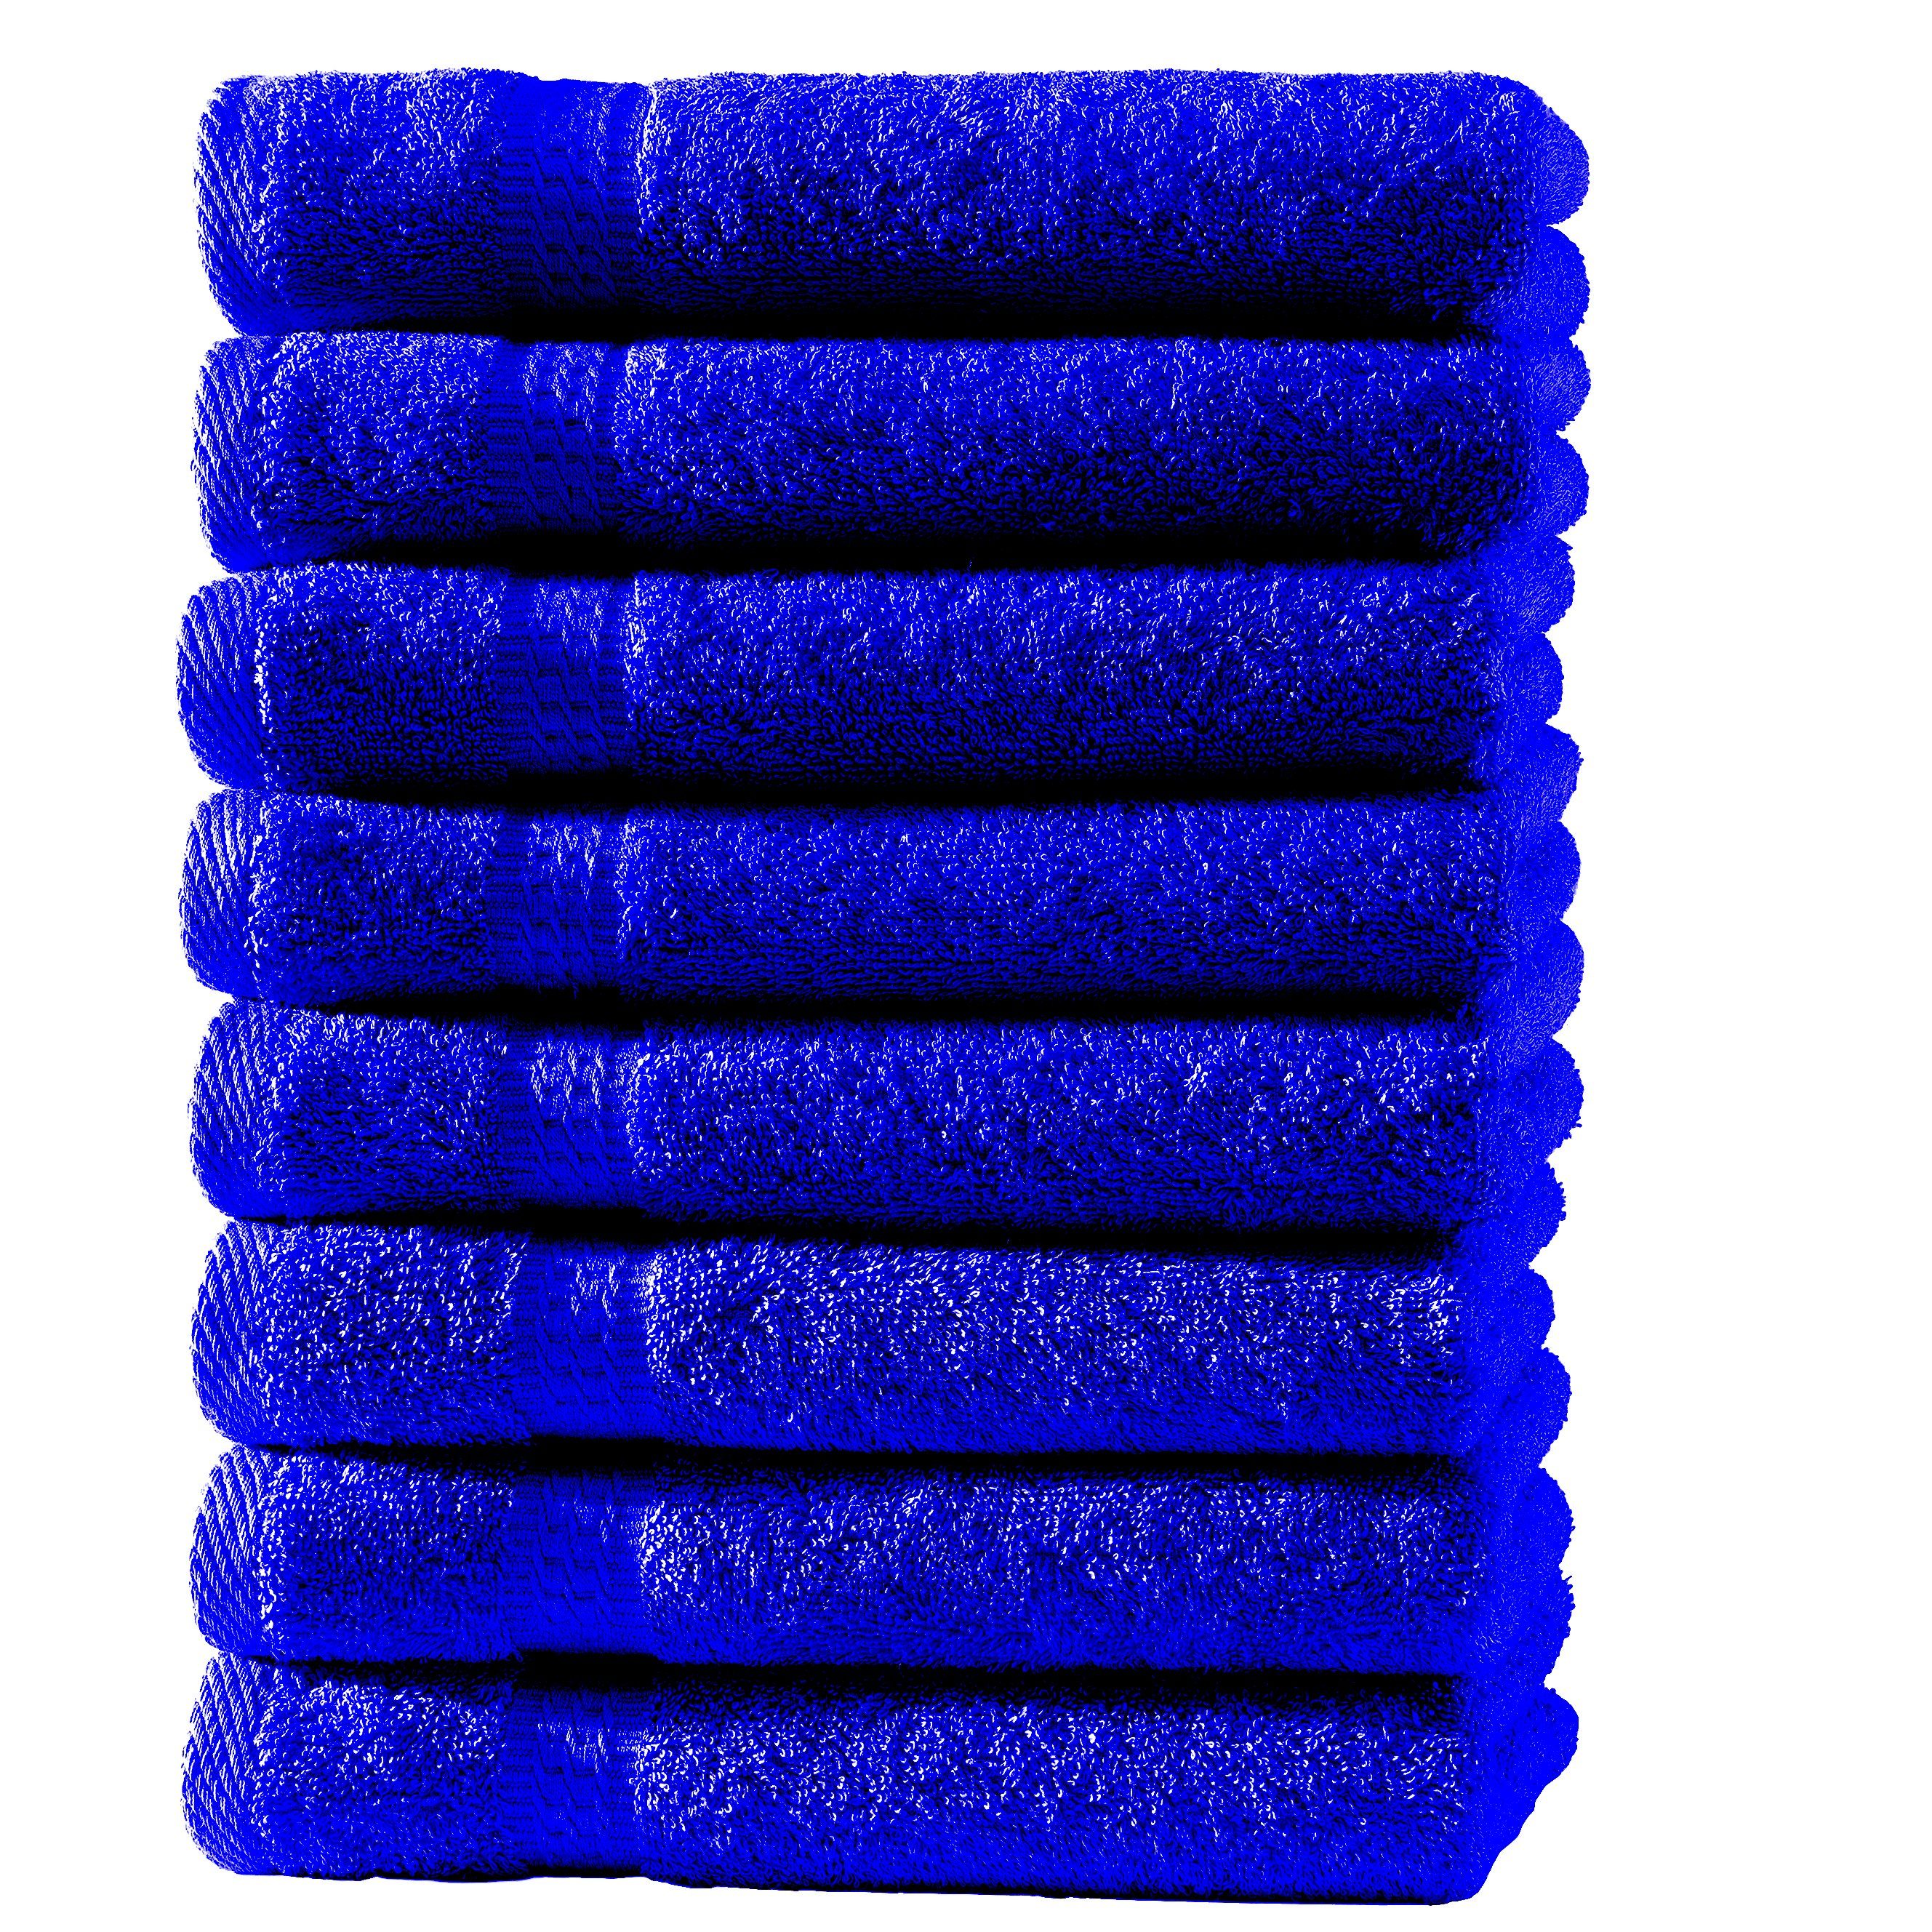 Hometex Premium Textiles Handtuch in Premium Qualität 500 g/m², Feinster Frottier-Stoff 100% Baumwolle, 8x Gästetuch, Kuschelig weich, saugfähig, Extra schwere, flauschige Hotel-Qualität